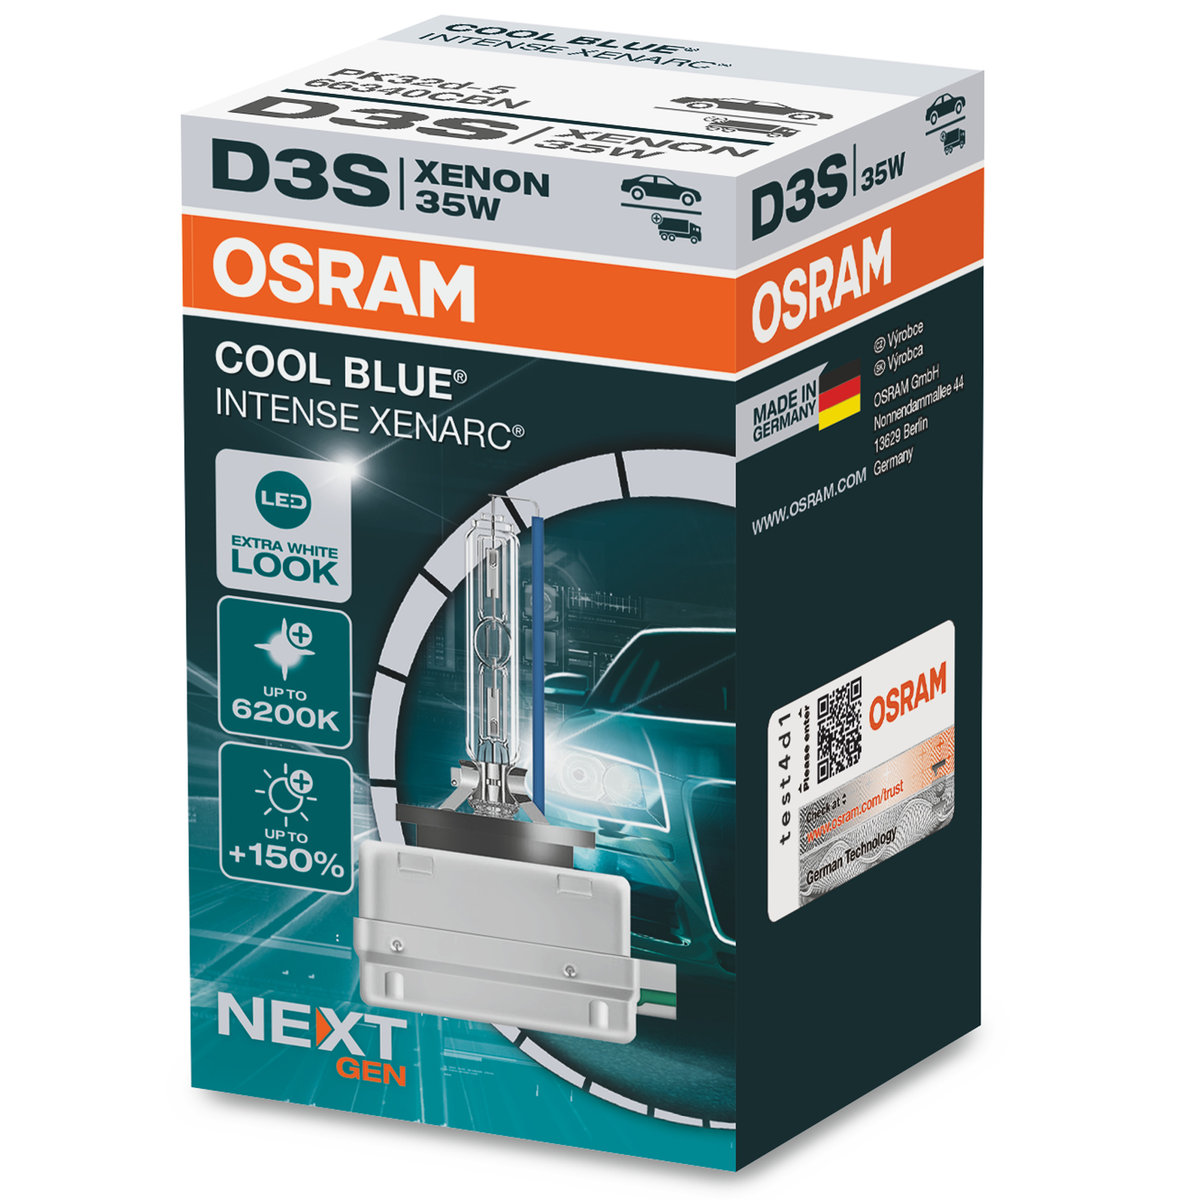 OSRAM XENARC COOL BLUE INTENSE D3S, +150% jaśniejsze światło, do 6200K, lampa ksenonowa, wygląd LED, kartonowe pudełko (1 lampa)